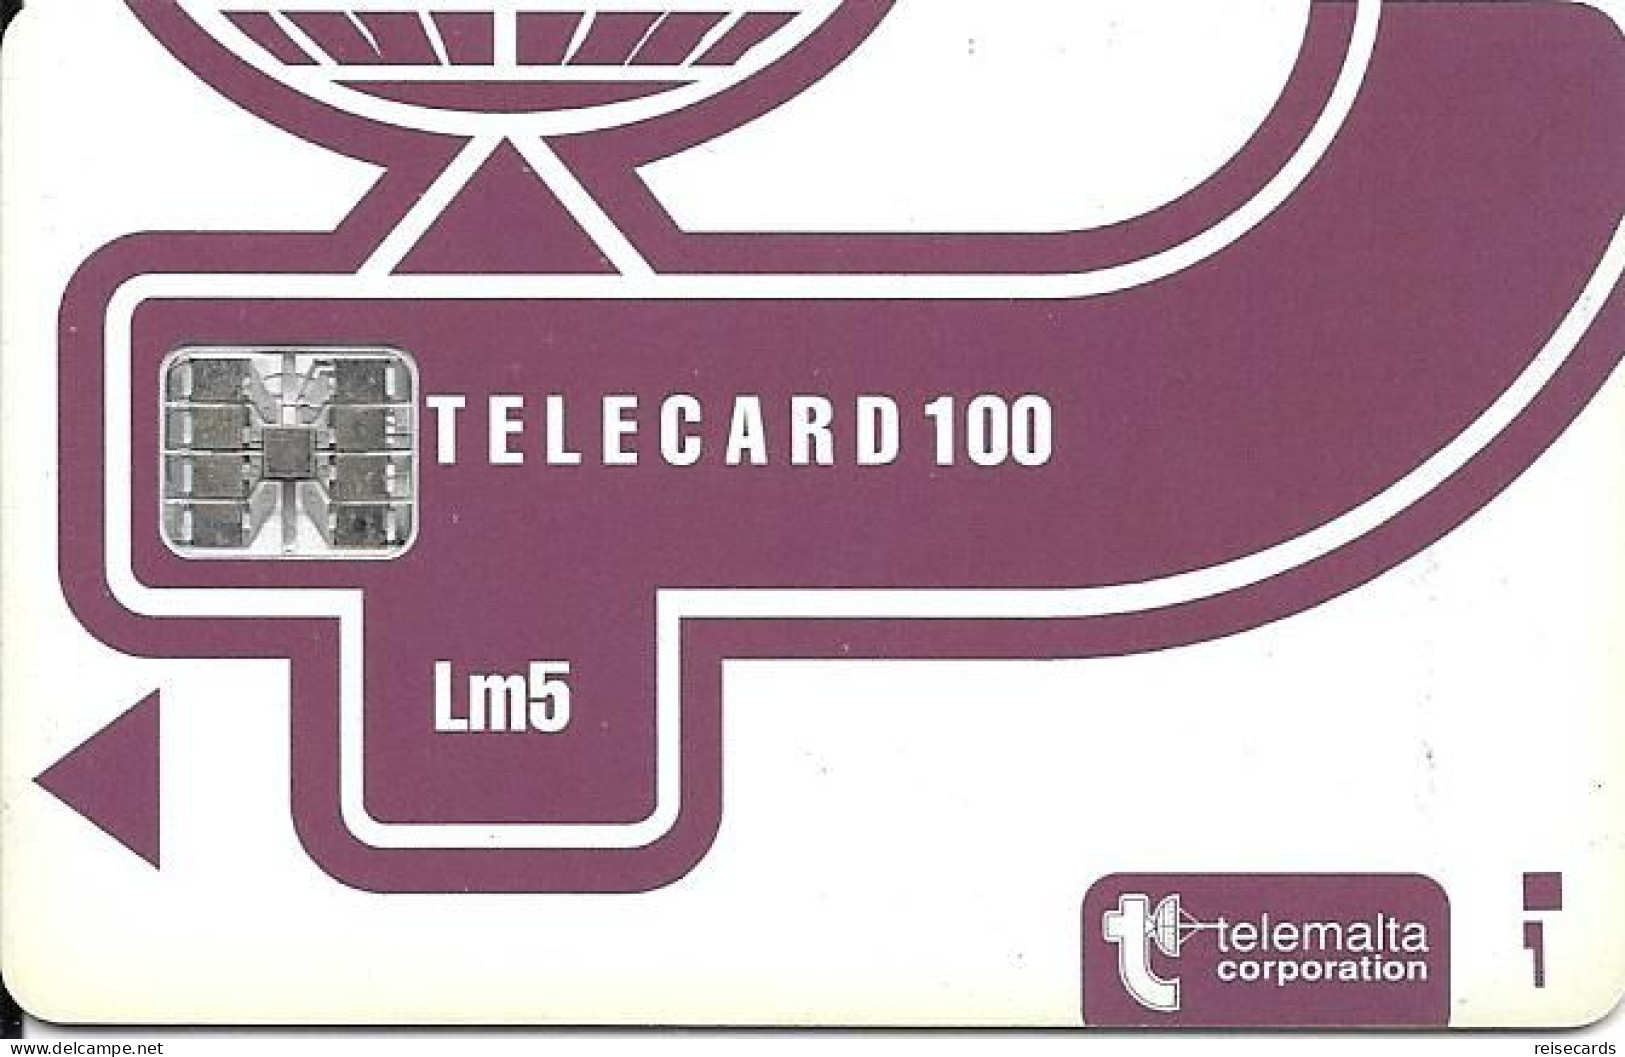 Malta: Telemalta - 1995 Telecard 100 - Malte